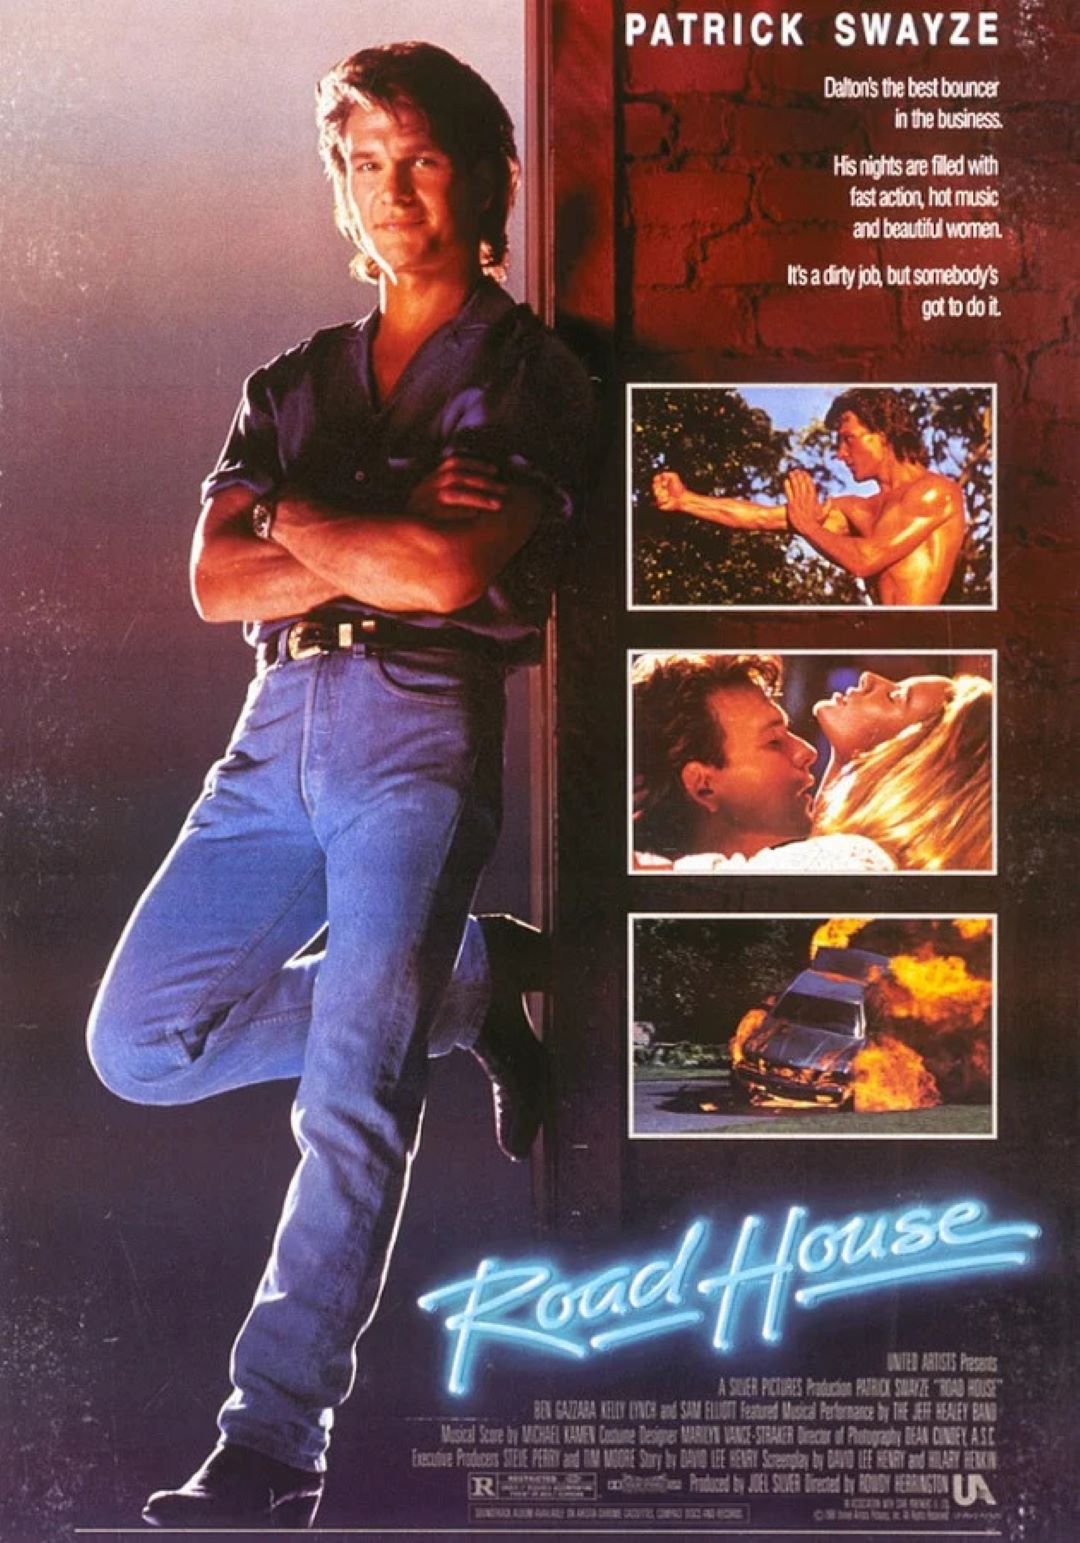 Il duro del Road House- il poster del film del 1989 con Patrick Swayze.